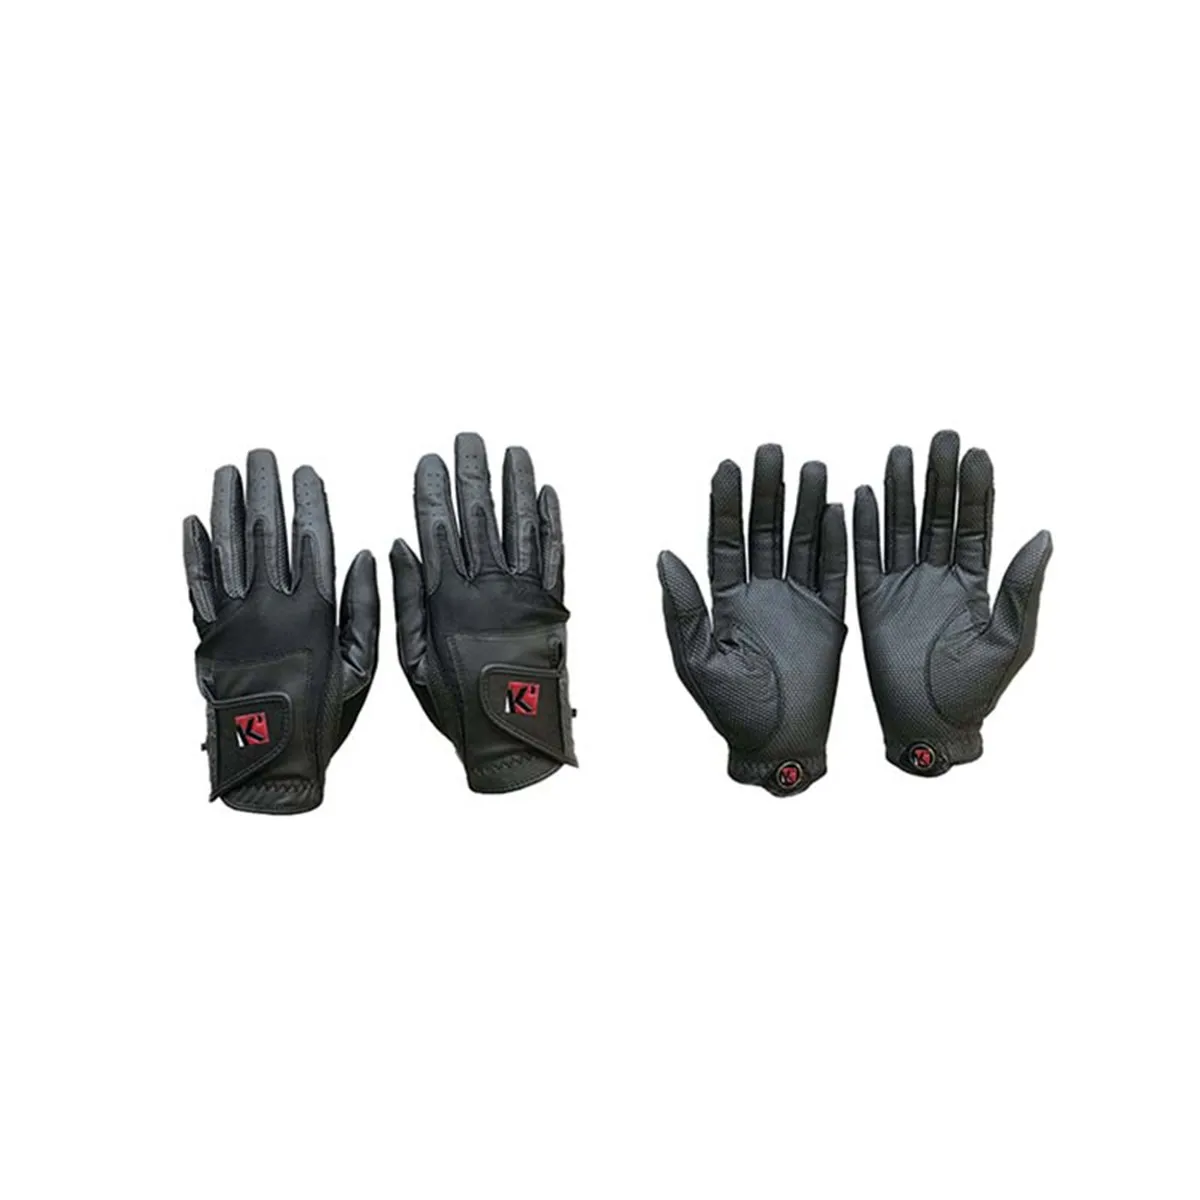 Функциональные защитные кожаные перчатки для верховой езды оптом